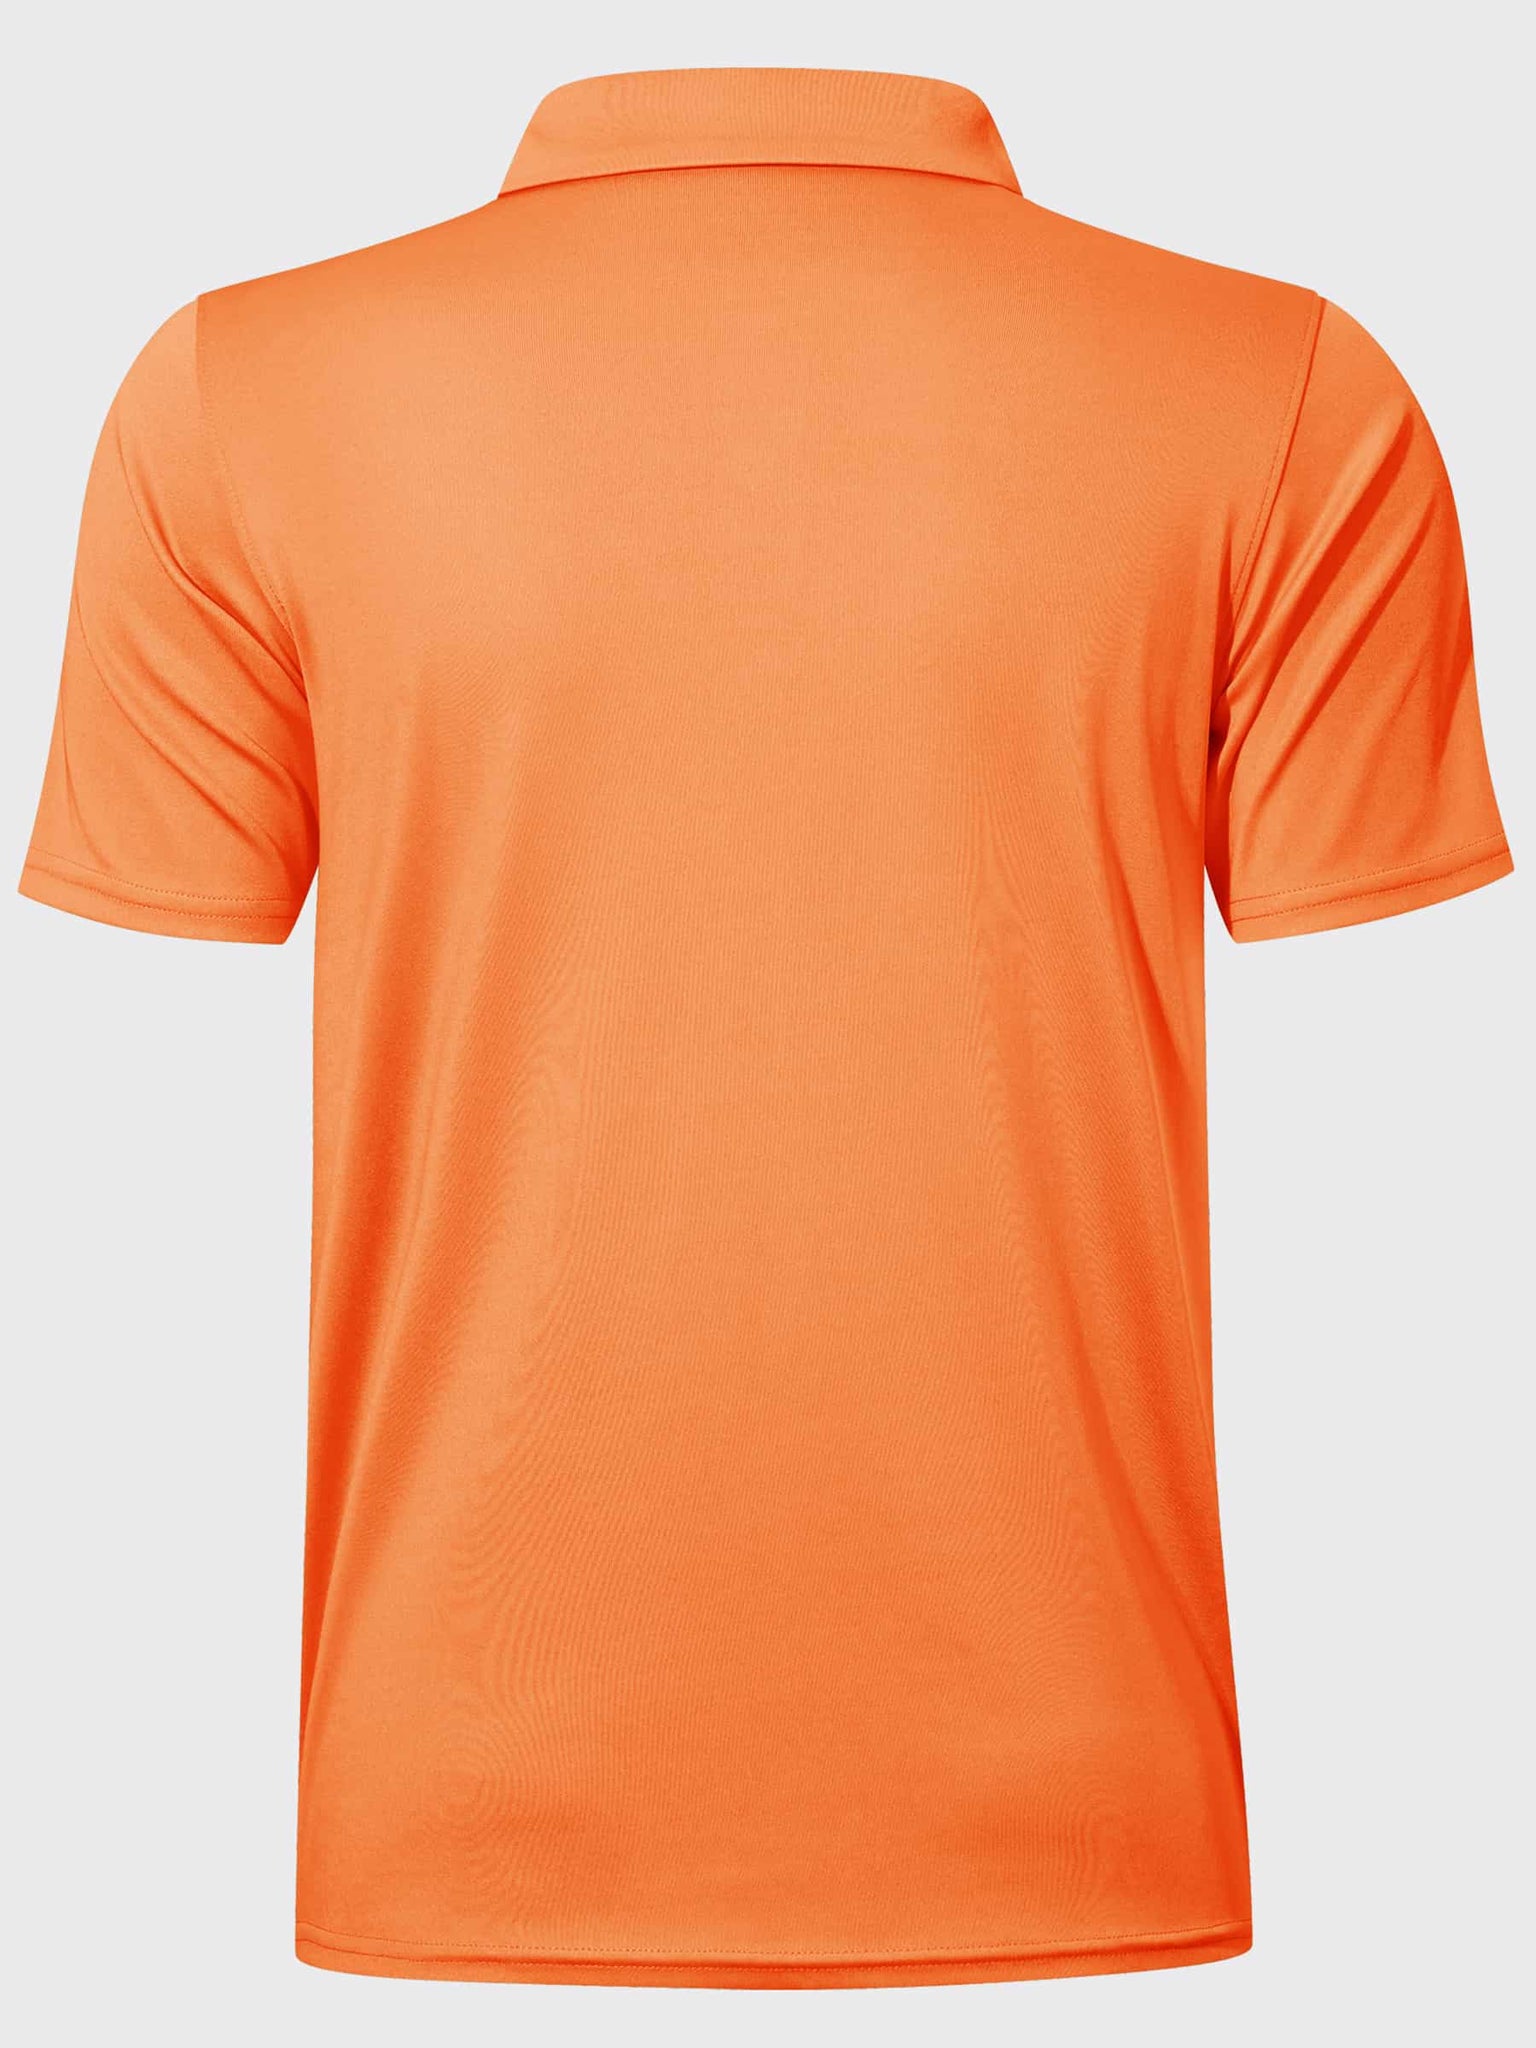 Youth Golf Polo Sun Shirts_Orange_laydown3